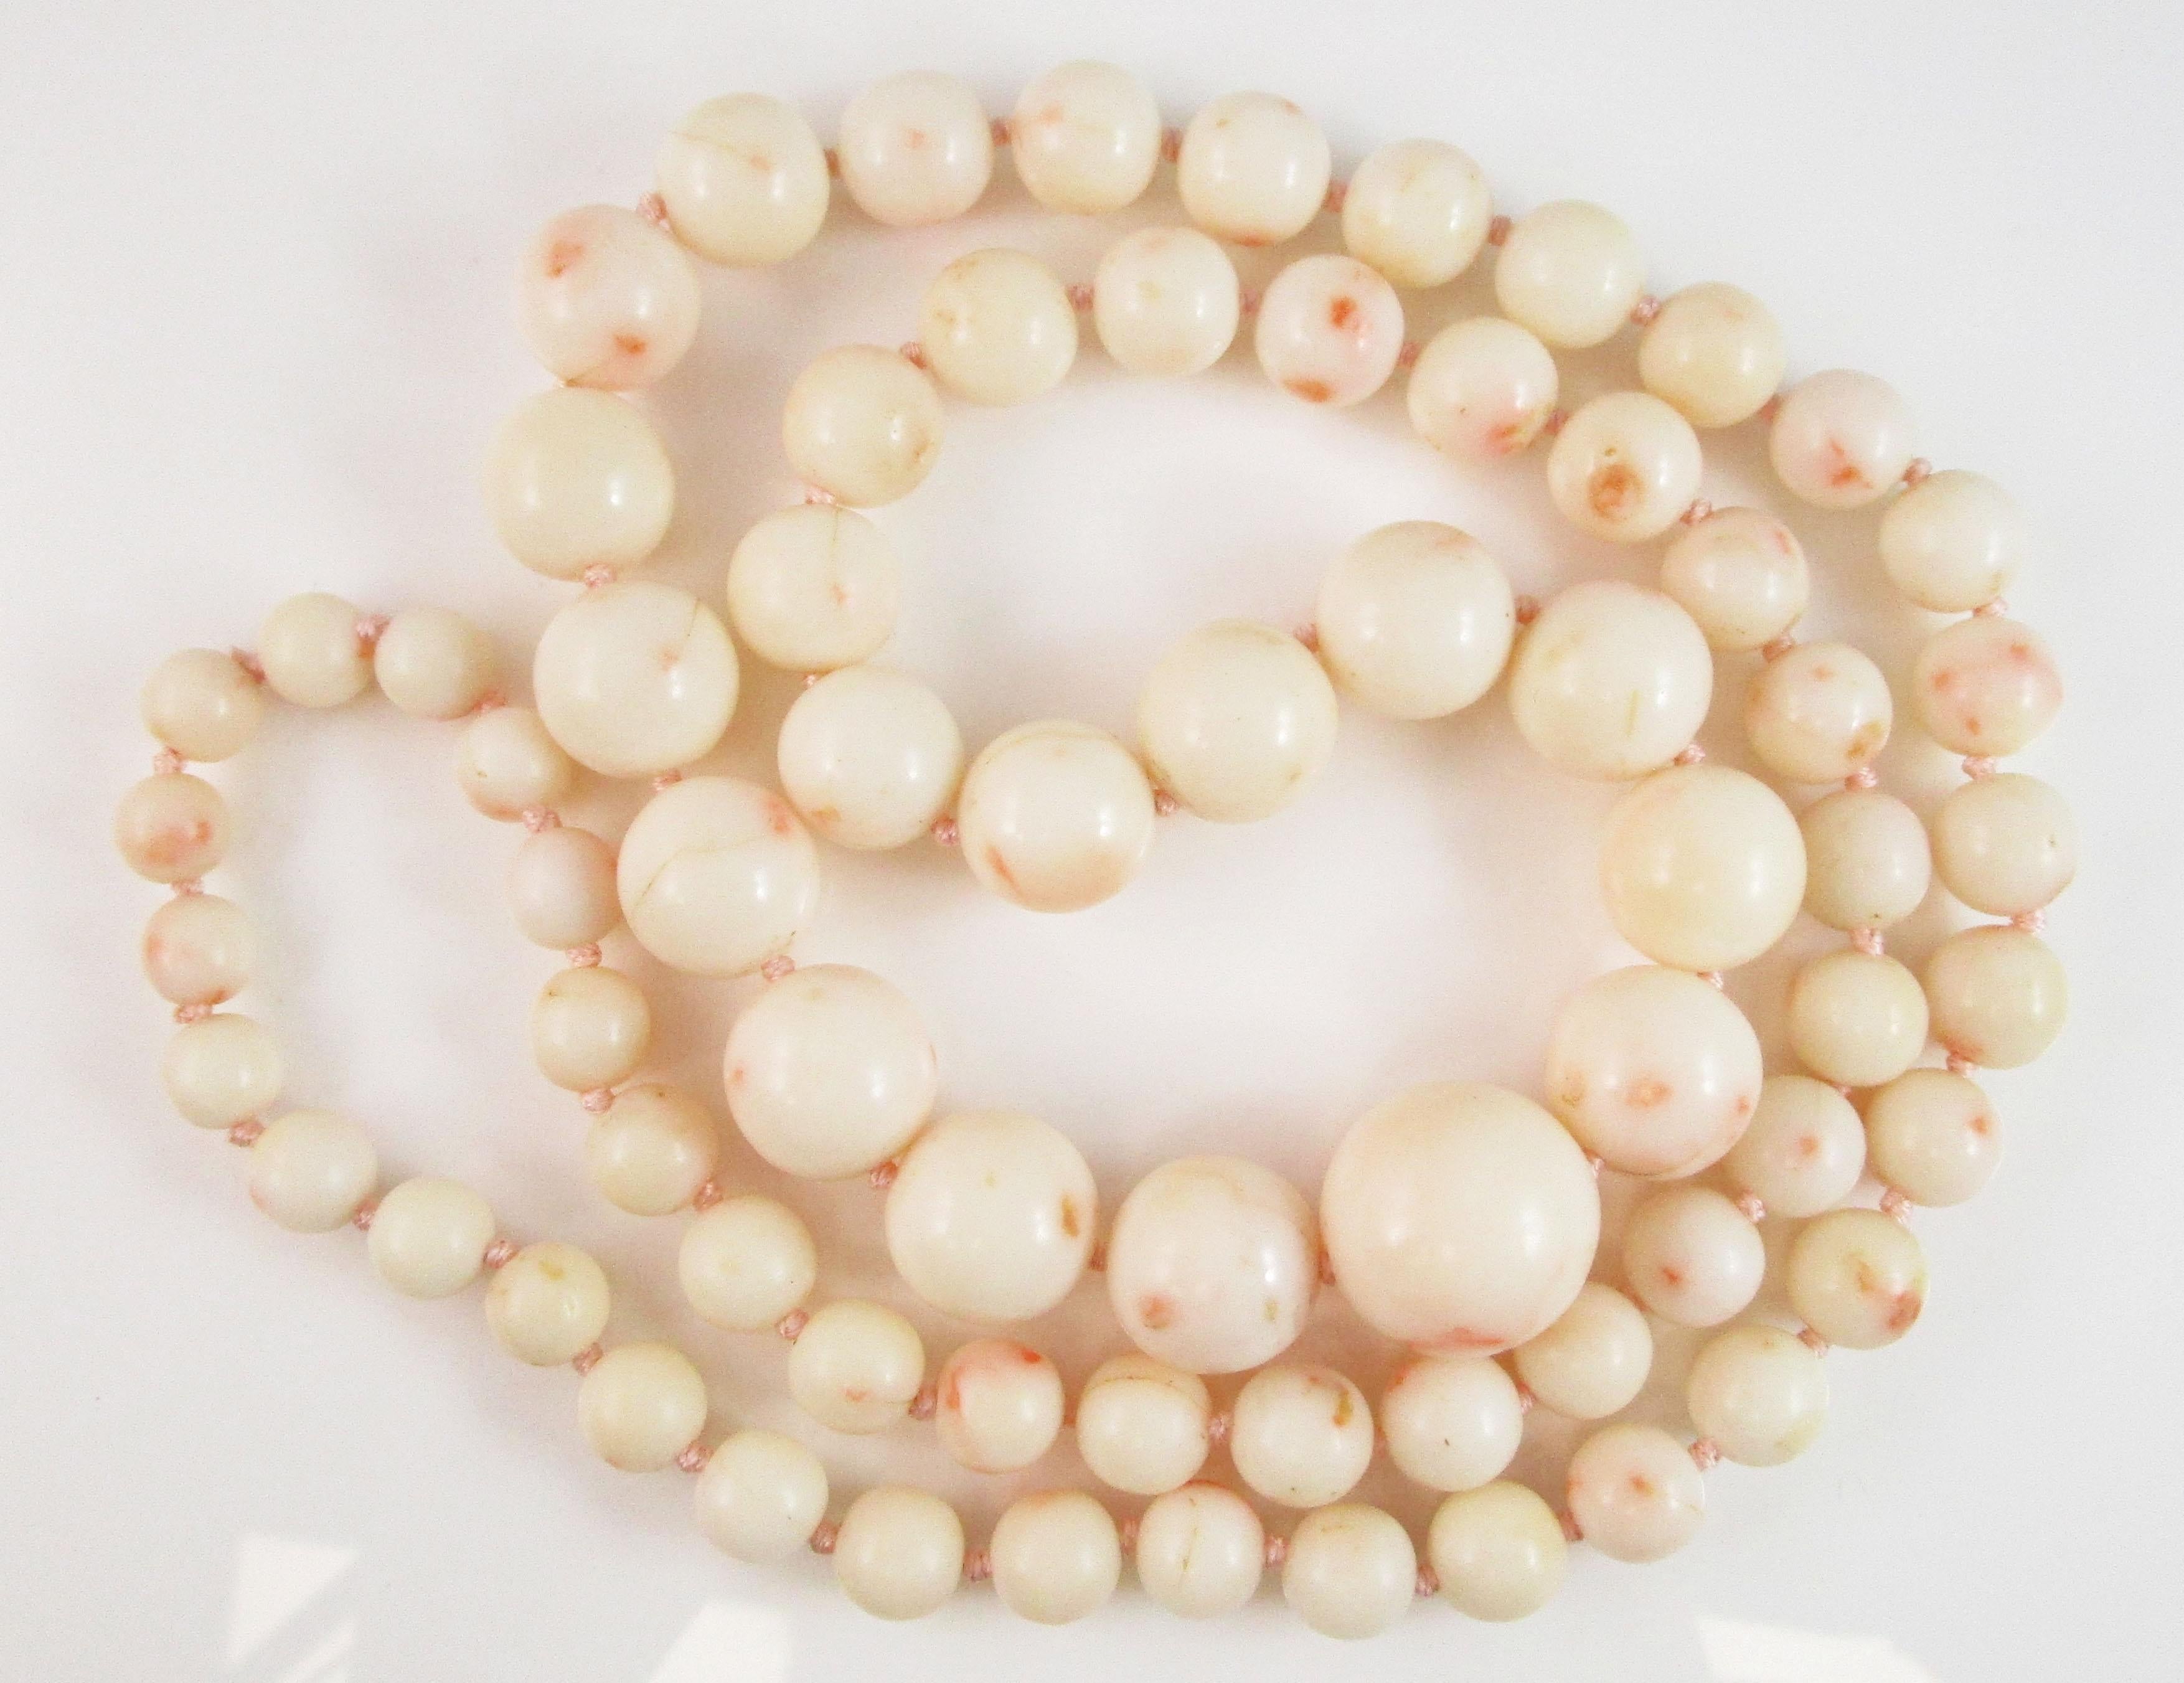 Il s'agit d'un collier en corail blanc à couper le souffle, avec une disposition graduée dramatique dans un look long et audacieux ! Le corail est d'une douce couleur blanche accentuée par des taches de pêche et de rose étonnantes. Les perles sont